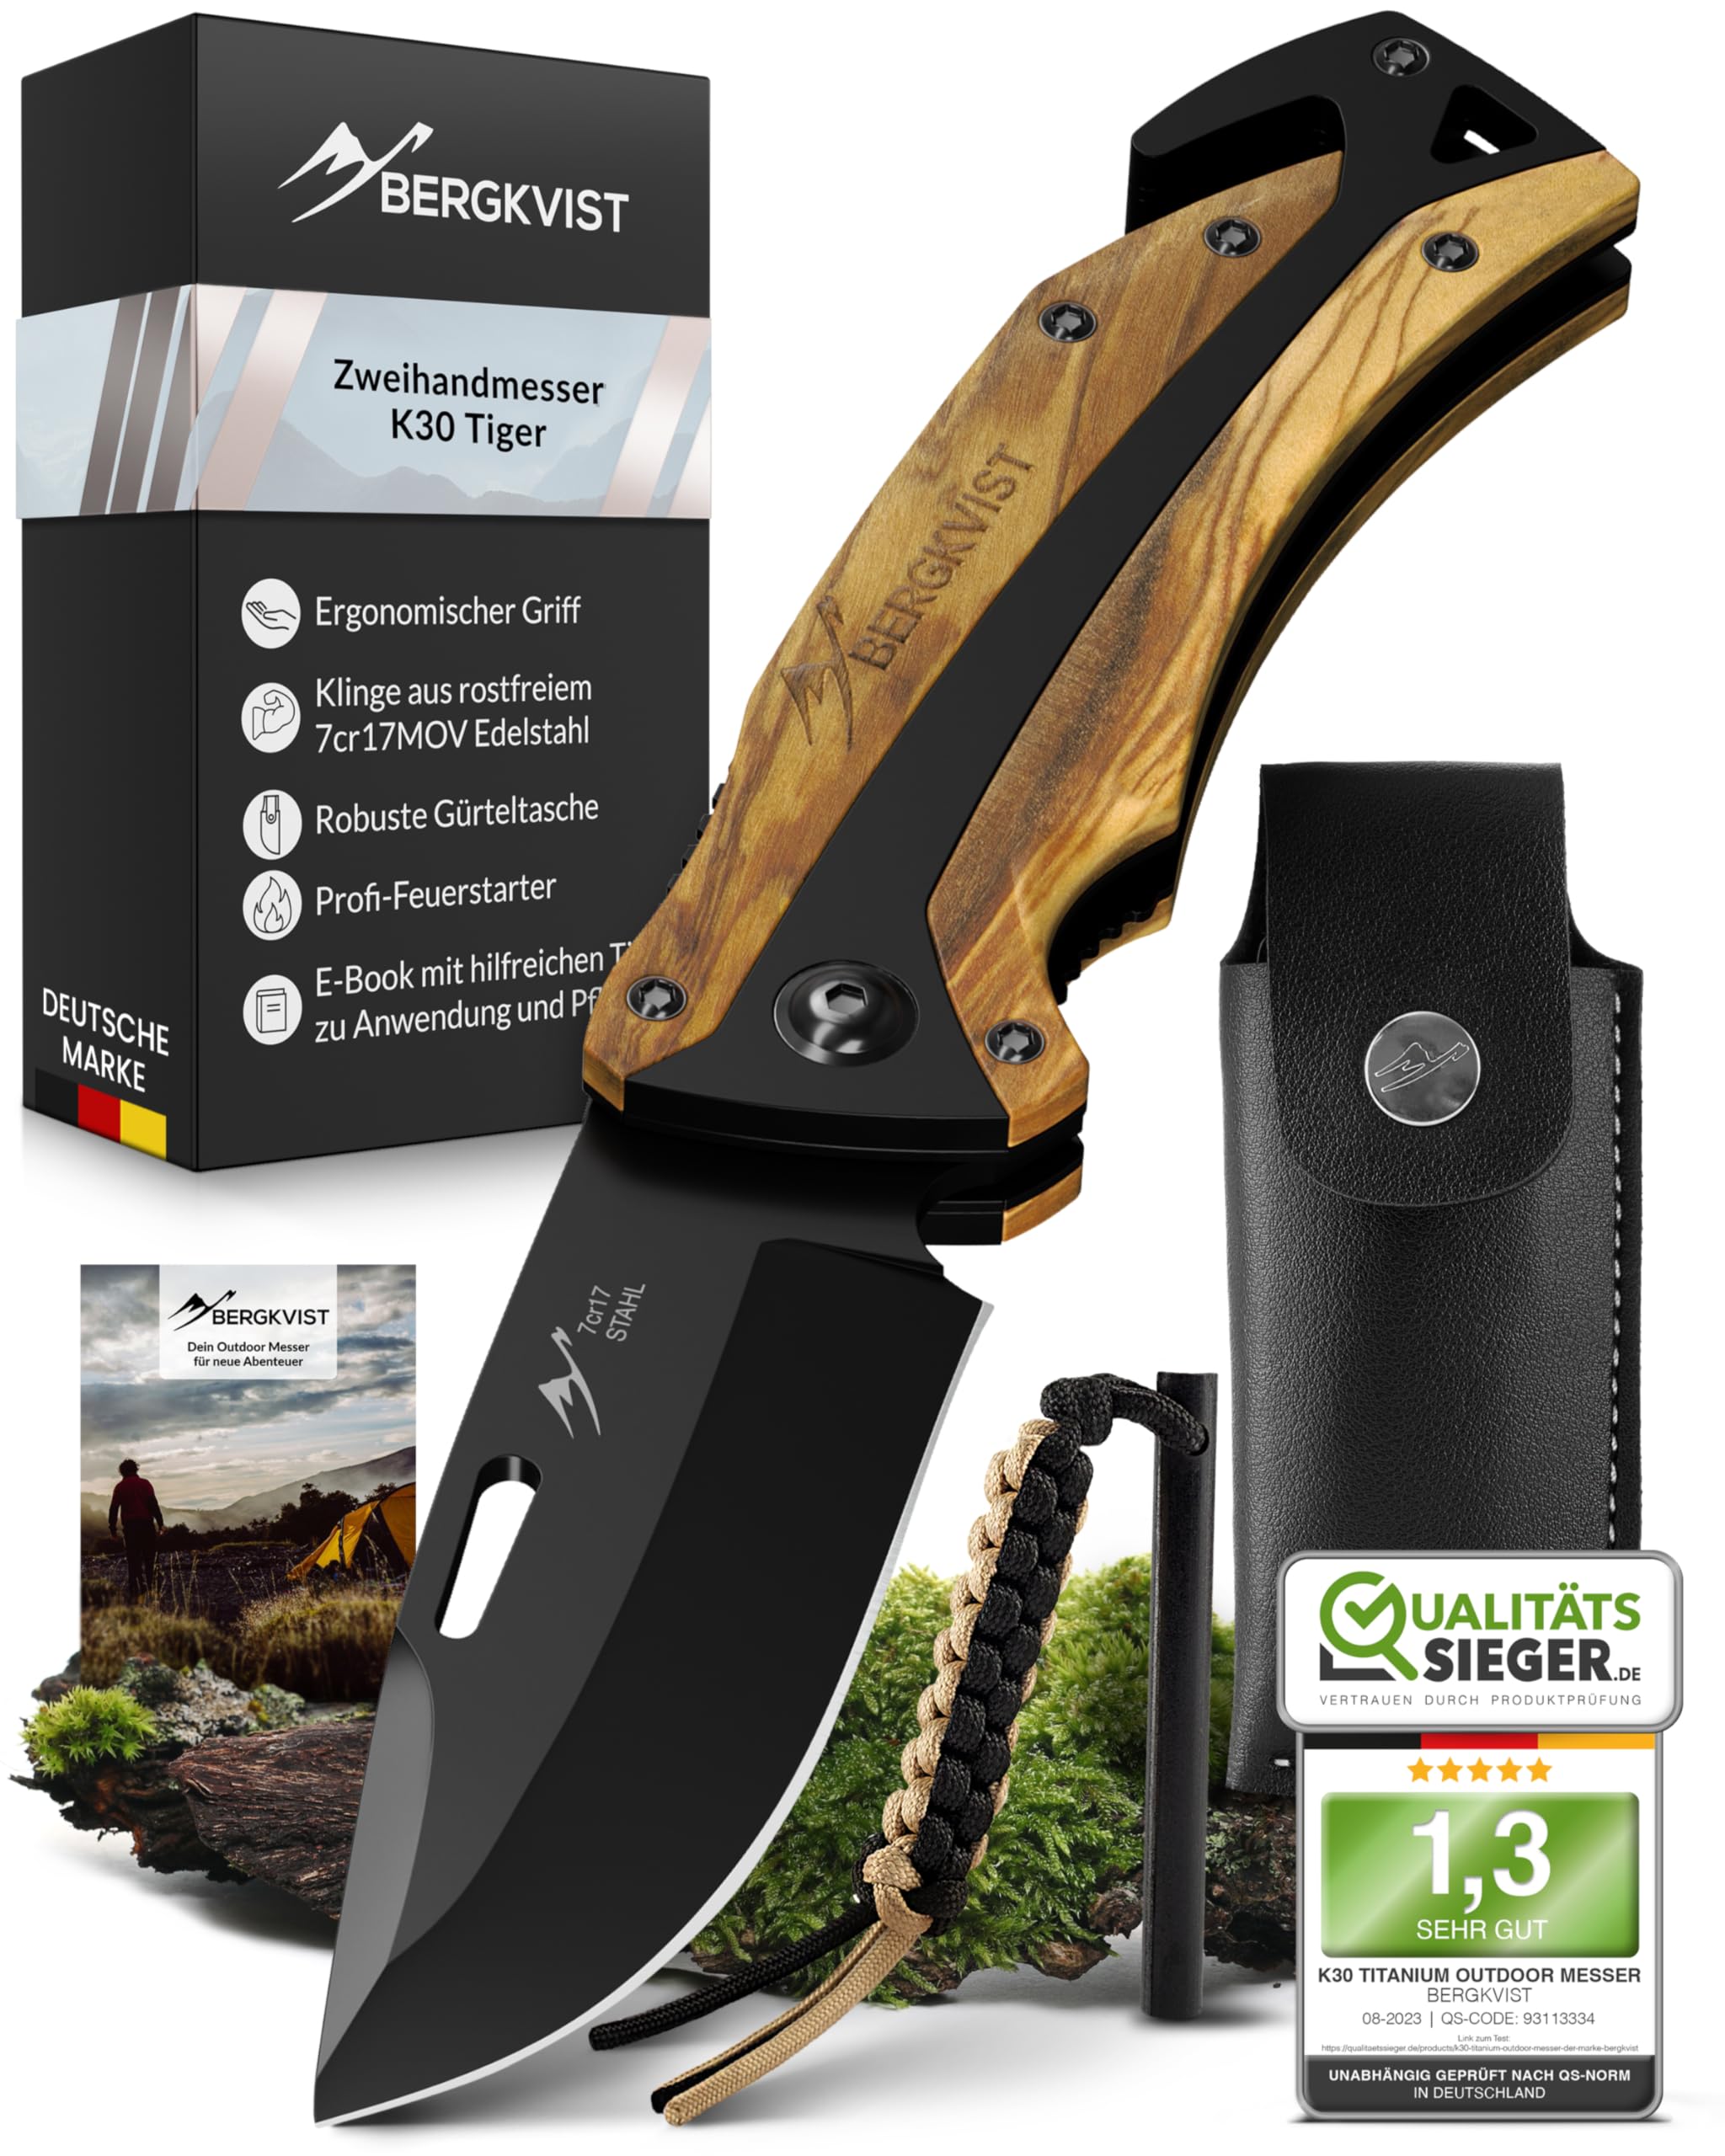 BERGKVIST® K30 Tiger Klappmesser (Zweihandmesser) - Mitführen in Deutschland erlaubt - 3-in-1 Outdoor Taschenmesser mit Glasbrecher & Gurtschneider für Camping & Survival